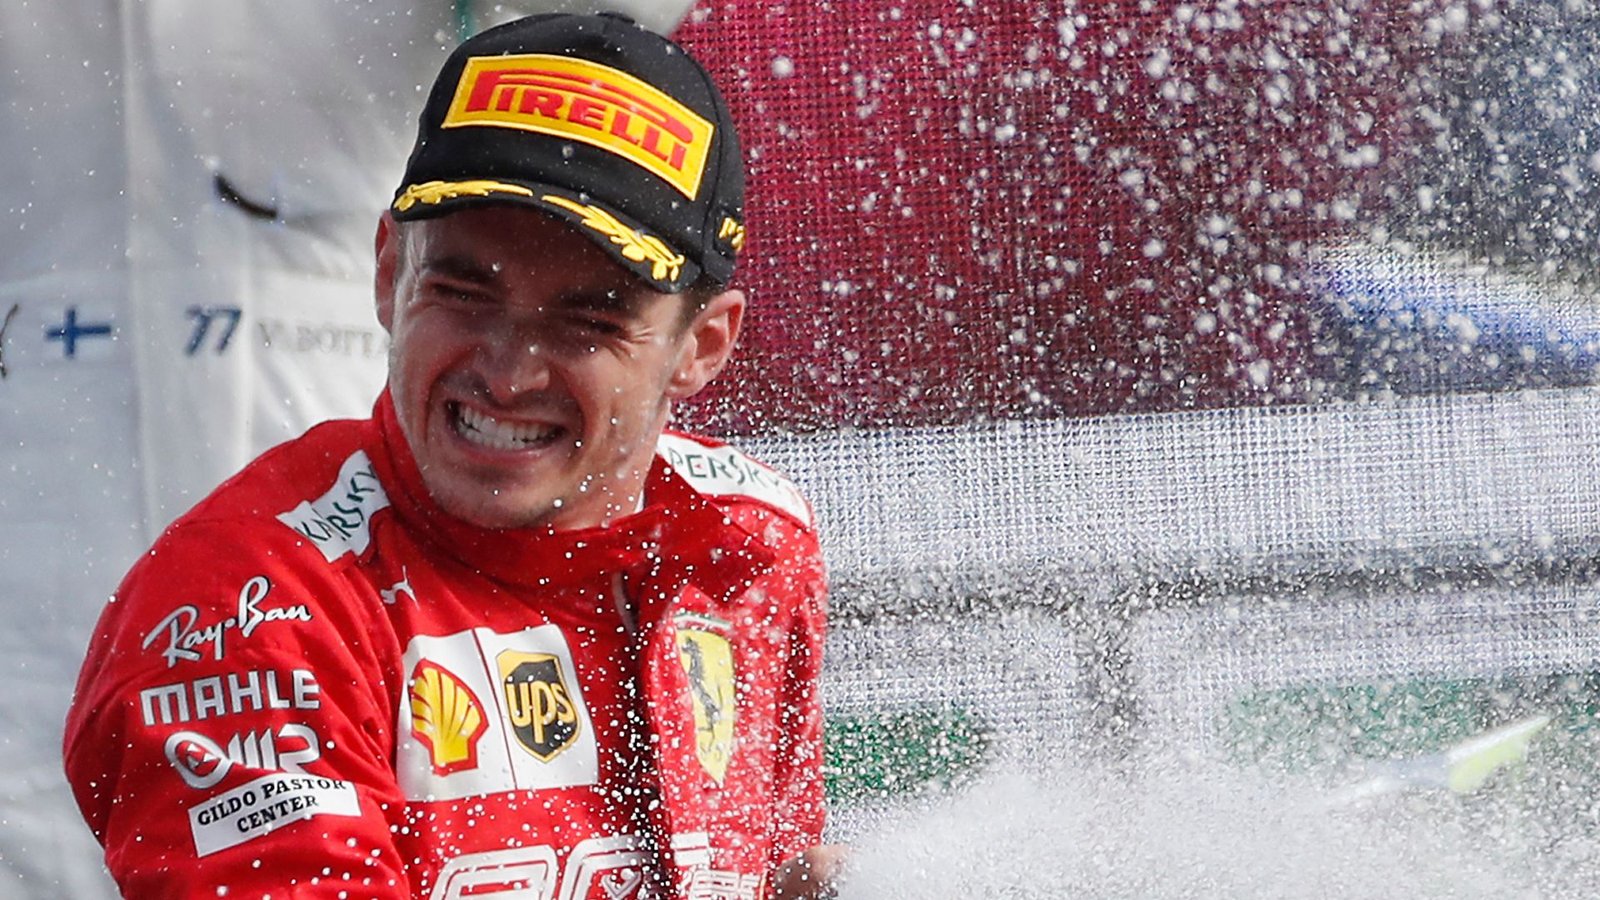 Der große Favorit der Formel 1 heißt Charles Leclerc und fährt für Ferrari.Foto: Antonio Calanni/AP/dpa